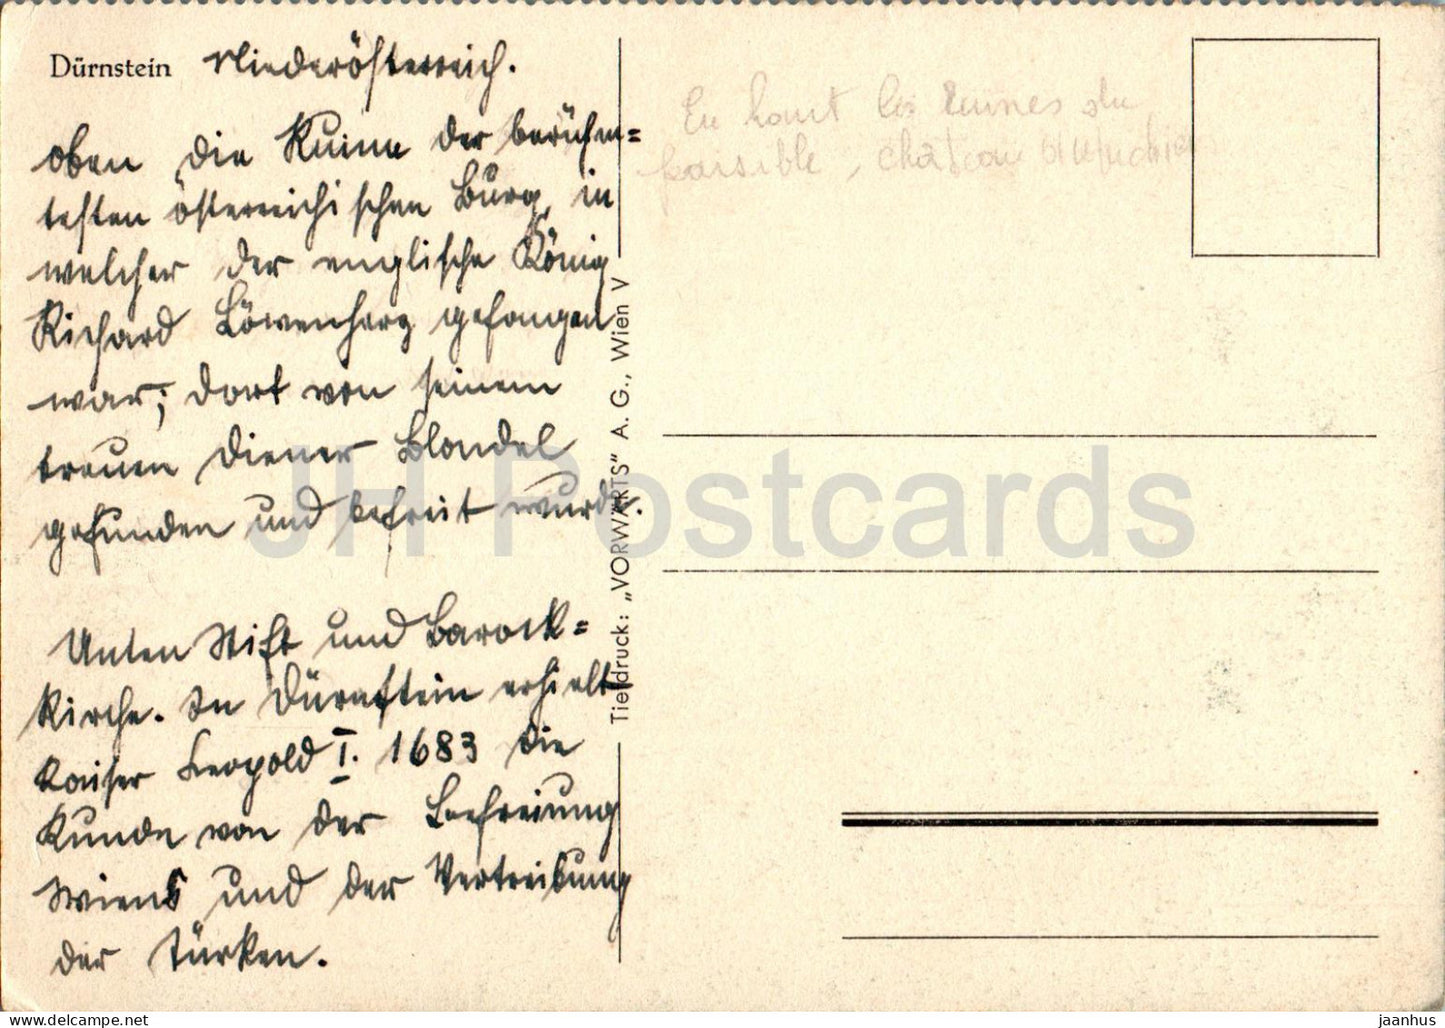 Durnstein - carte postale ancienne - Autriche - utilisé 